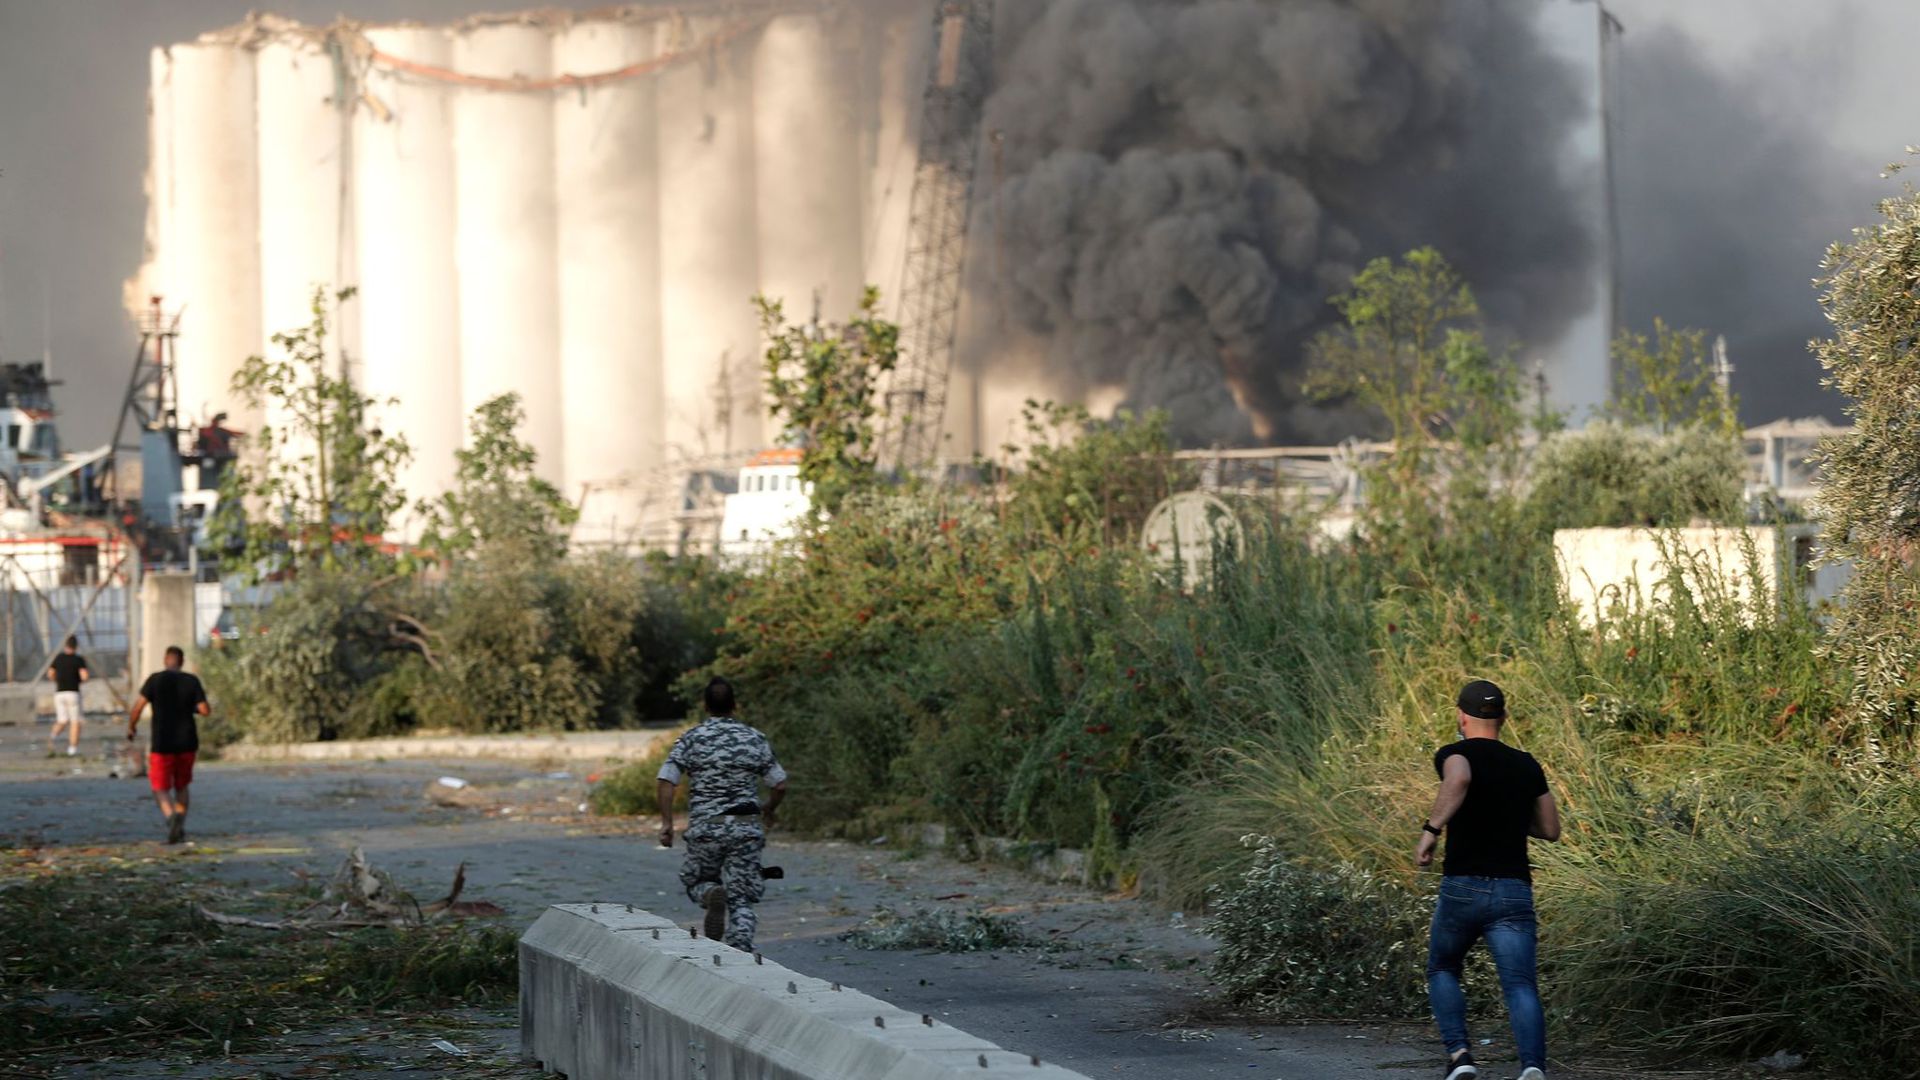 Sicherheitsleute laufen zum Ort der Explosion im Hafen von Beirut, während über dem Gebäude Rauch aufsteigt.